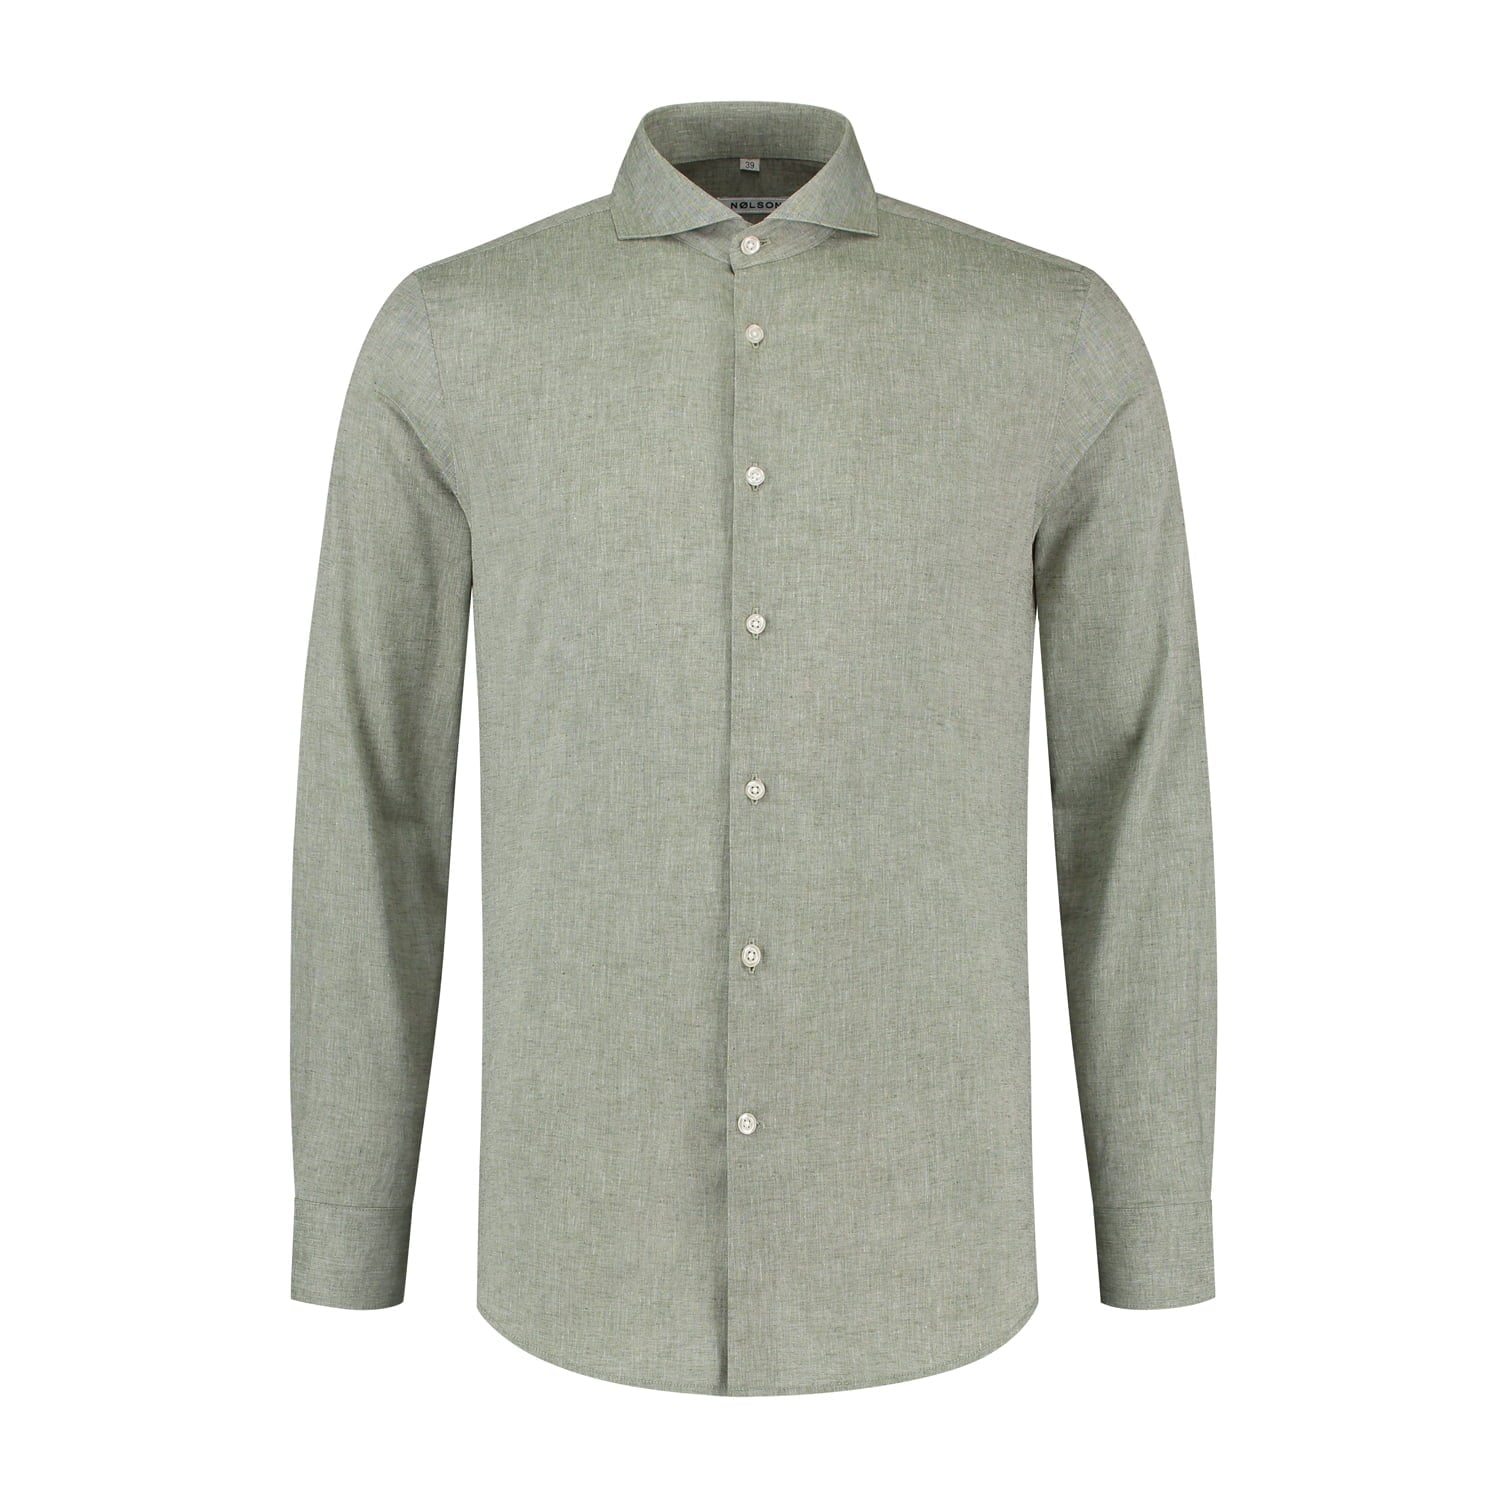 Green slim fit linen shirt